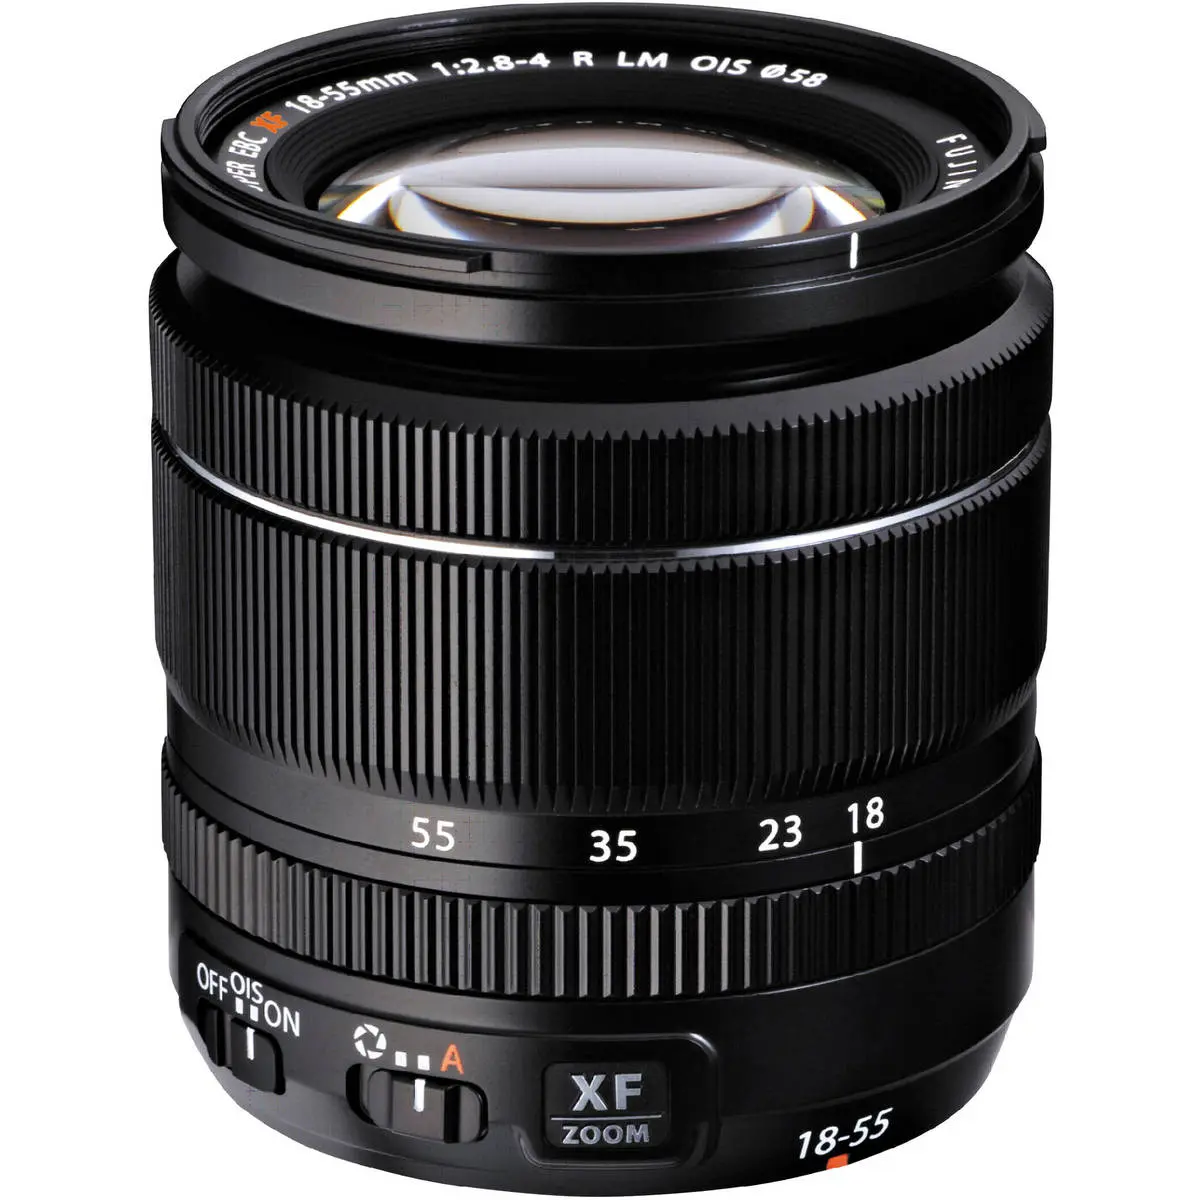 Main Image Fujifilm FUJINON XF 18-55mm F2.8-4 R LM OIS Lens